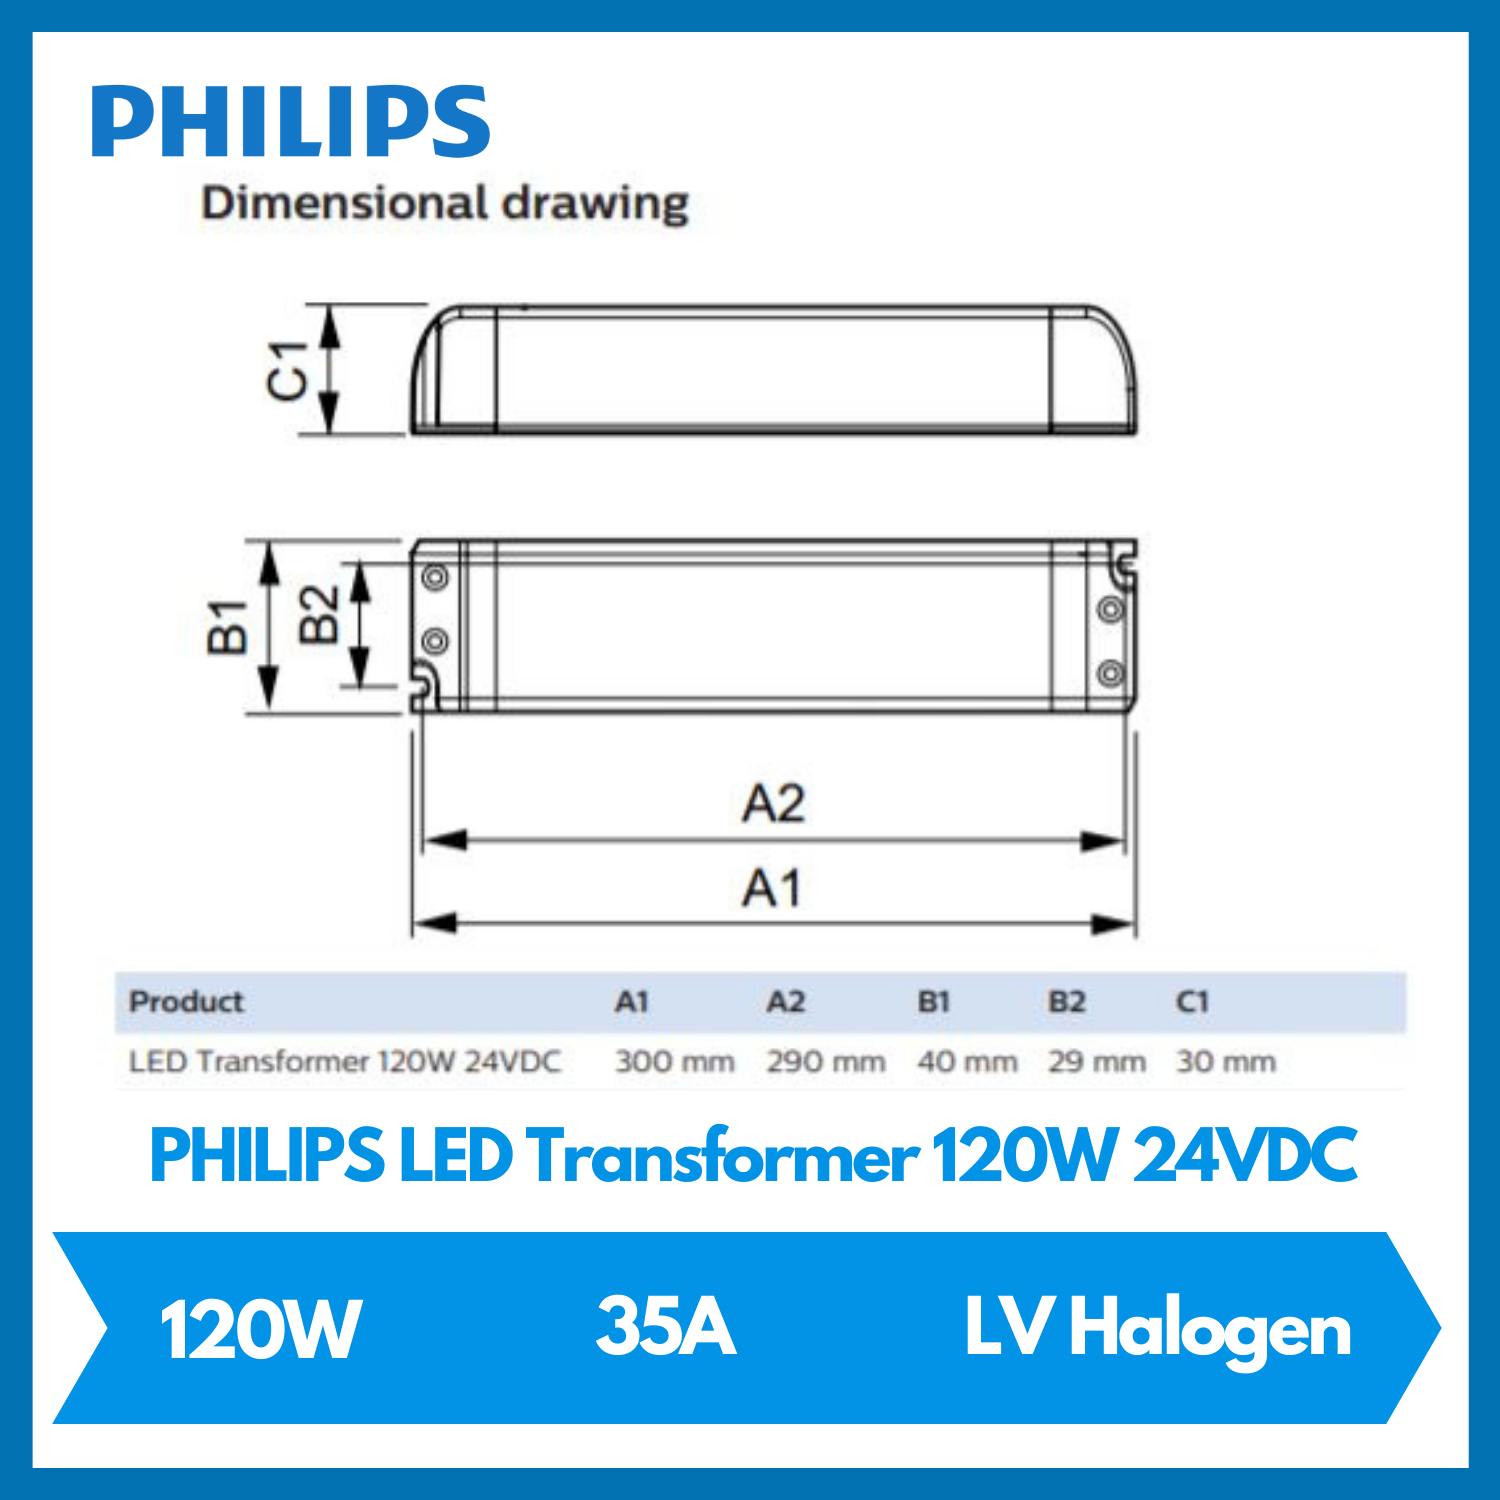 PHILIPS LED Transformer 120W 24VDC